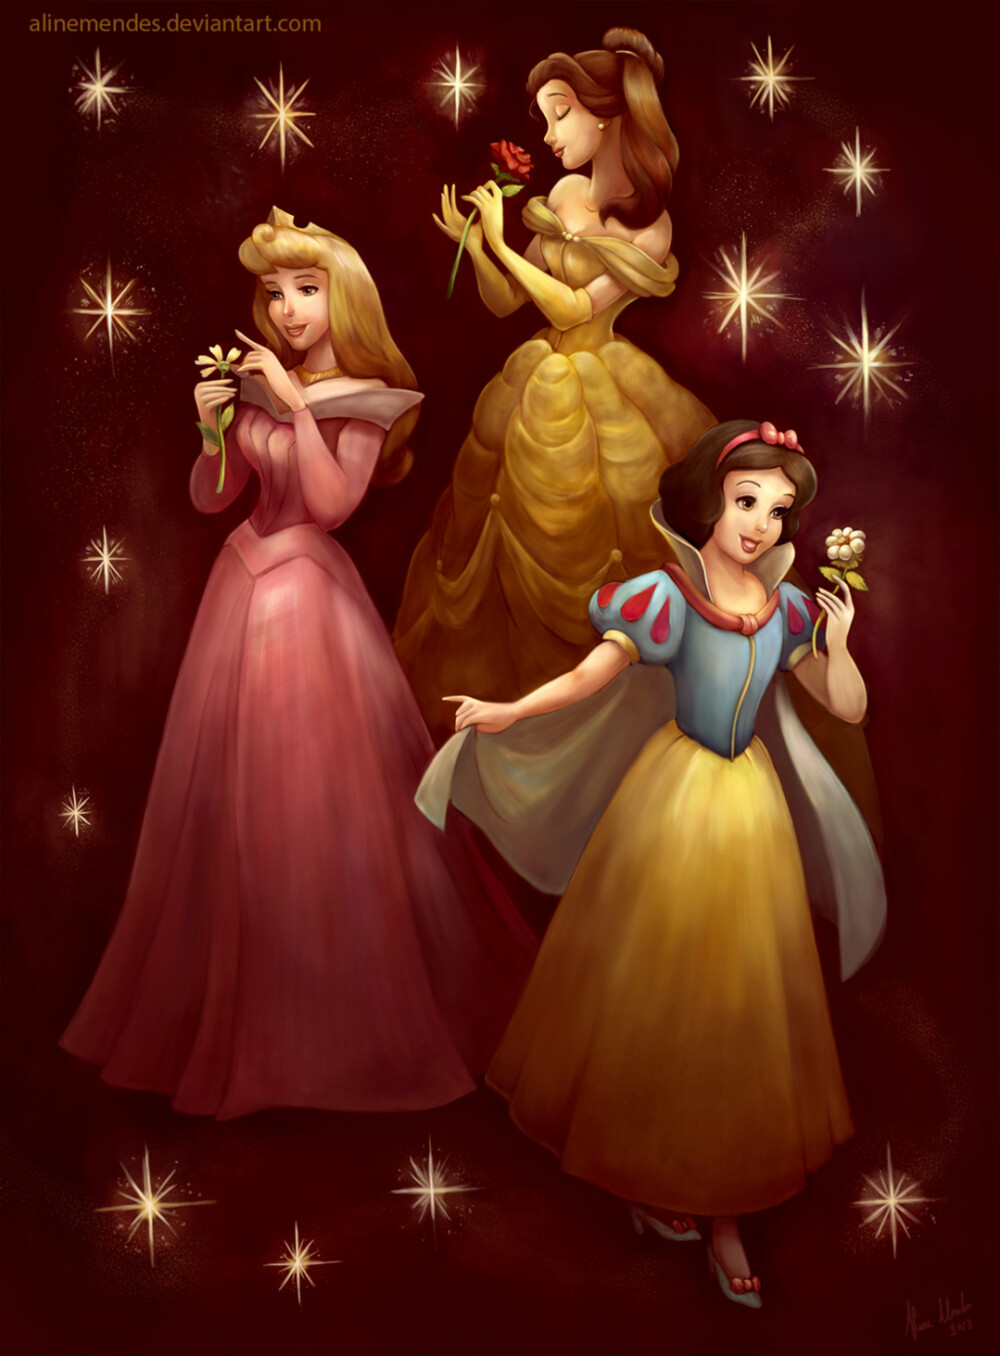 白雪公主跟贝儿公主图片